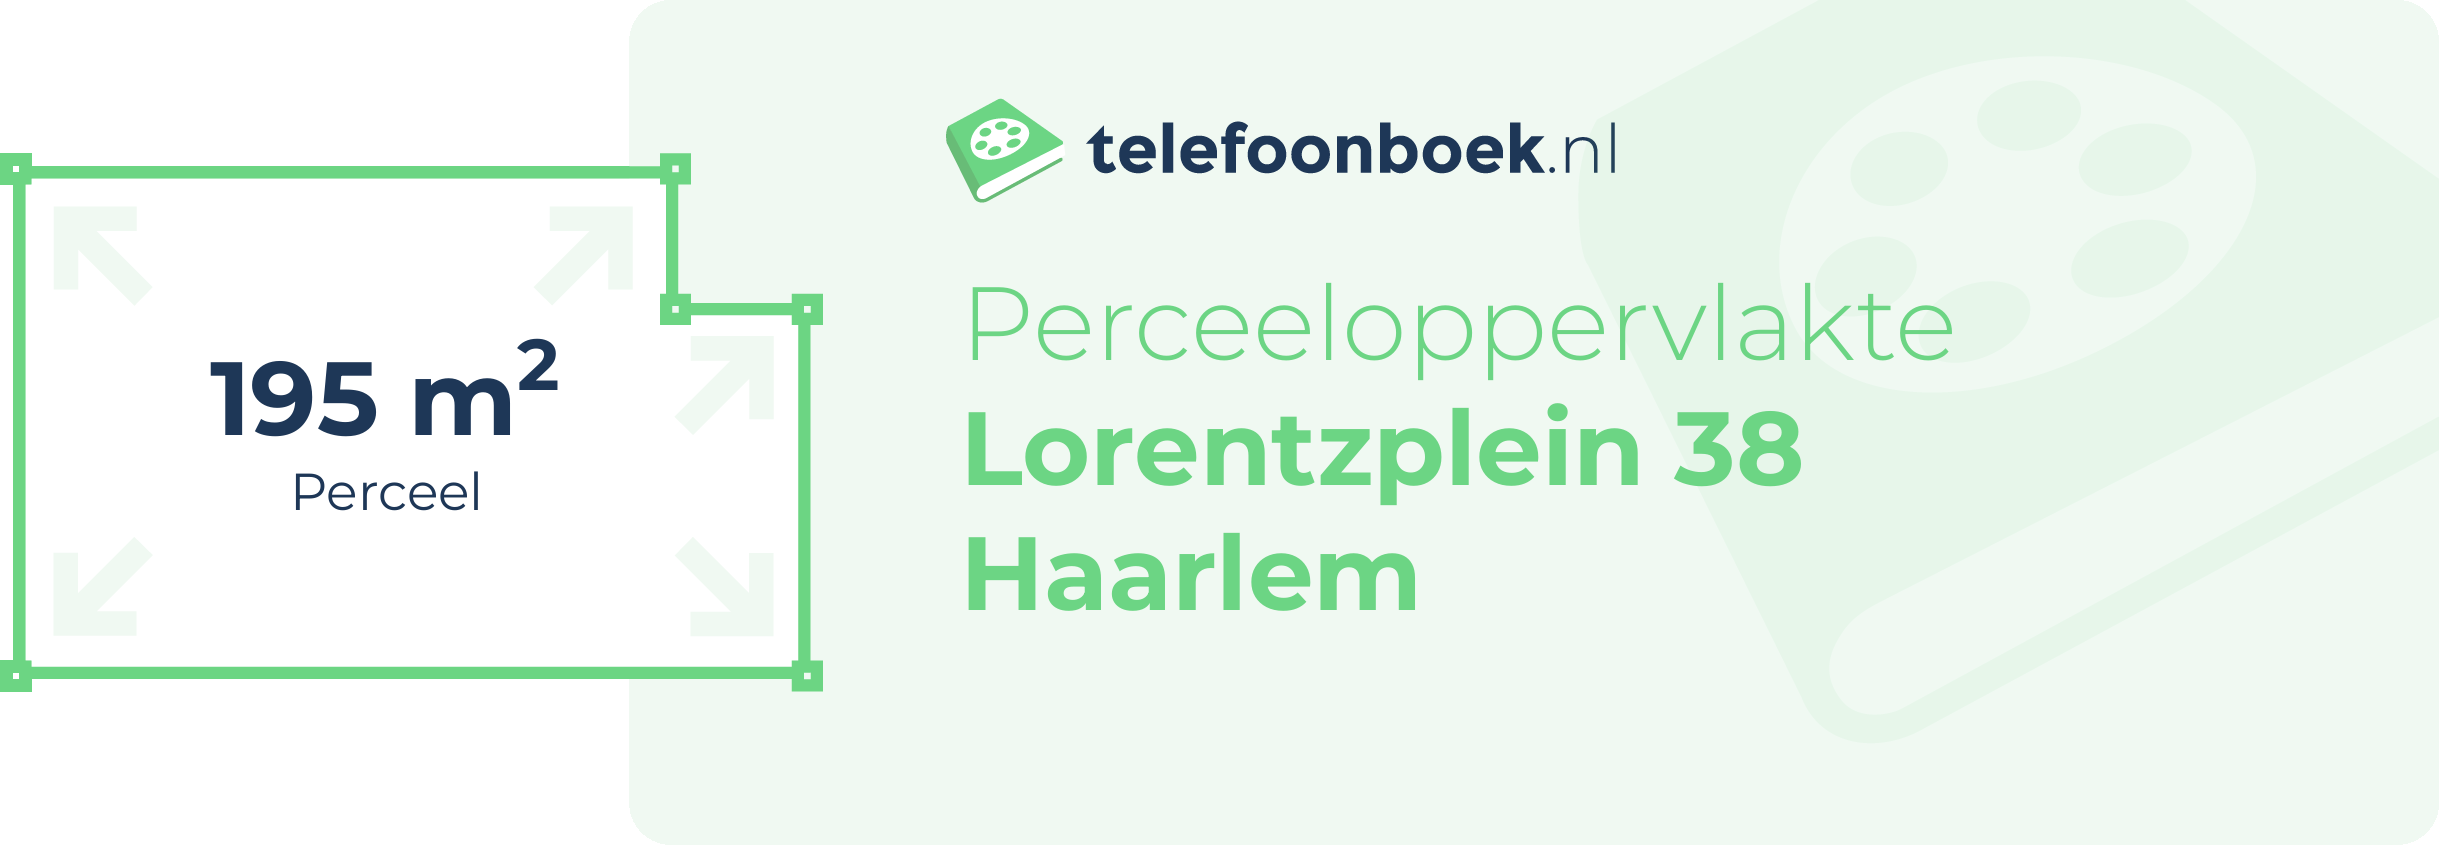 Perceeloppervlakte Lorentzplein 38 Haarlem